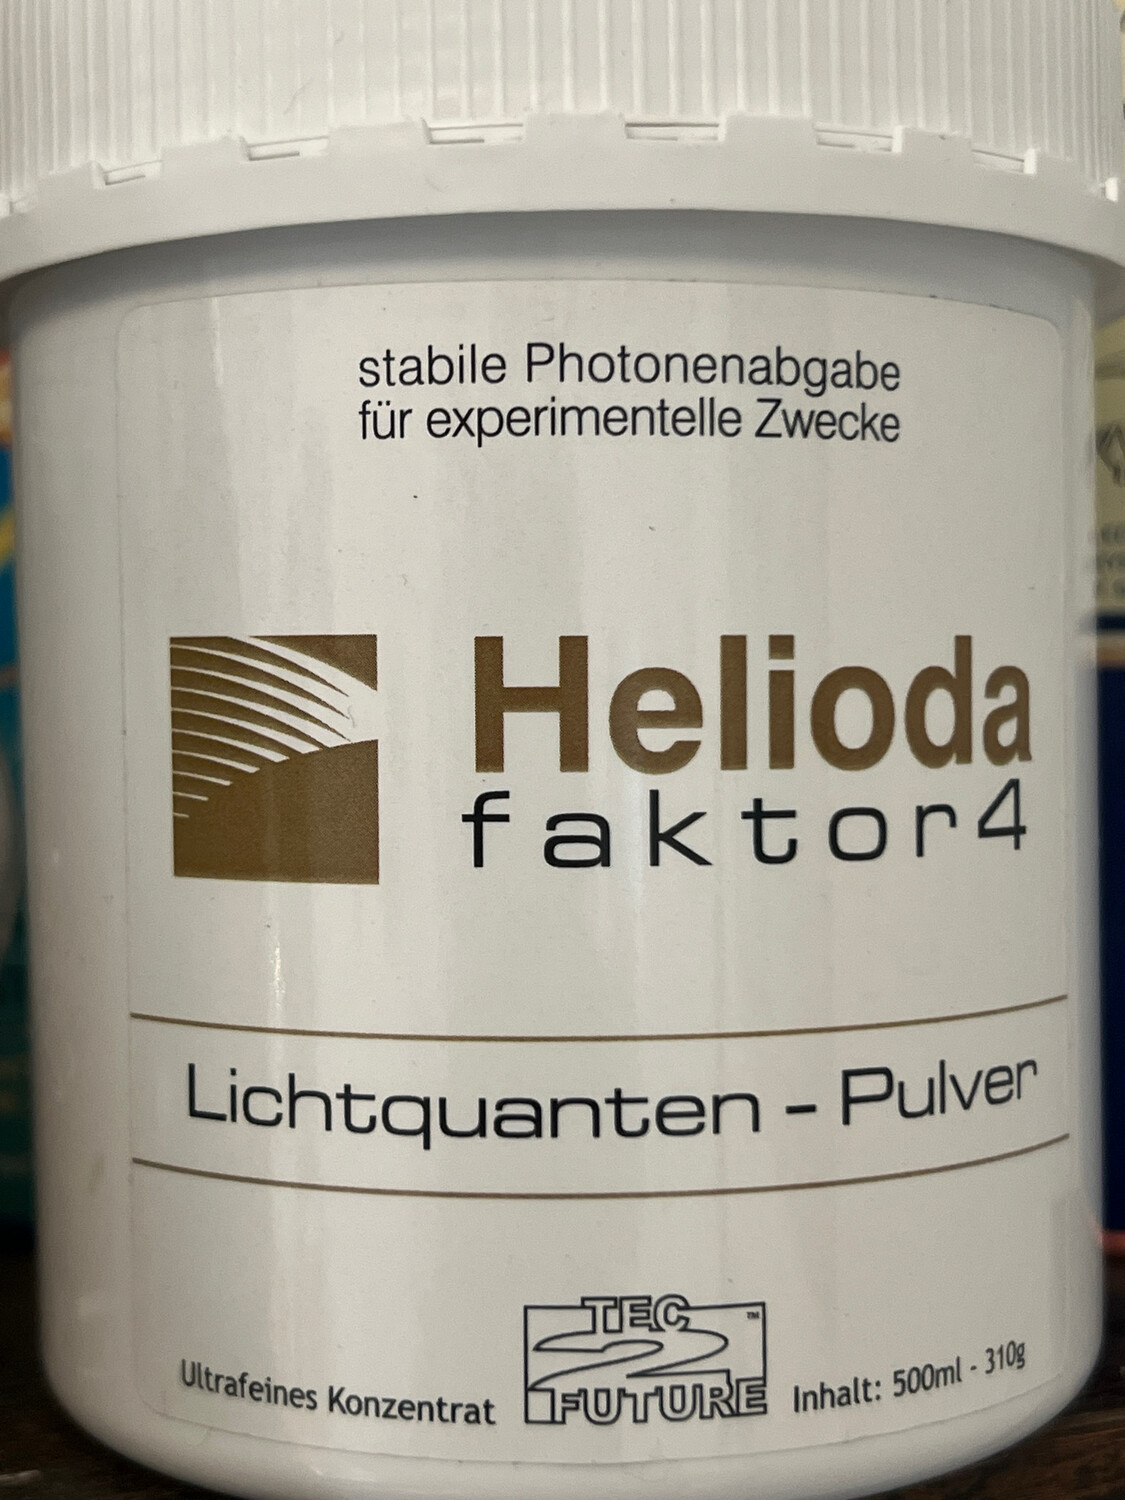 Helioda Biophotonenpulver (Lichtquantenpulver)